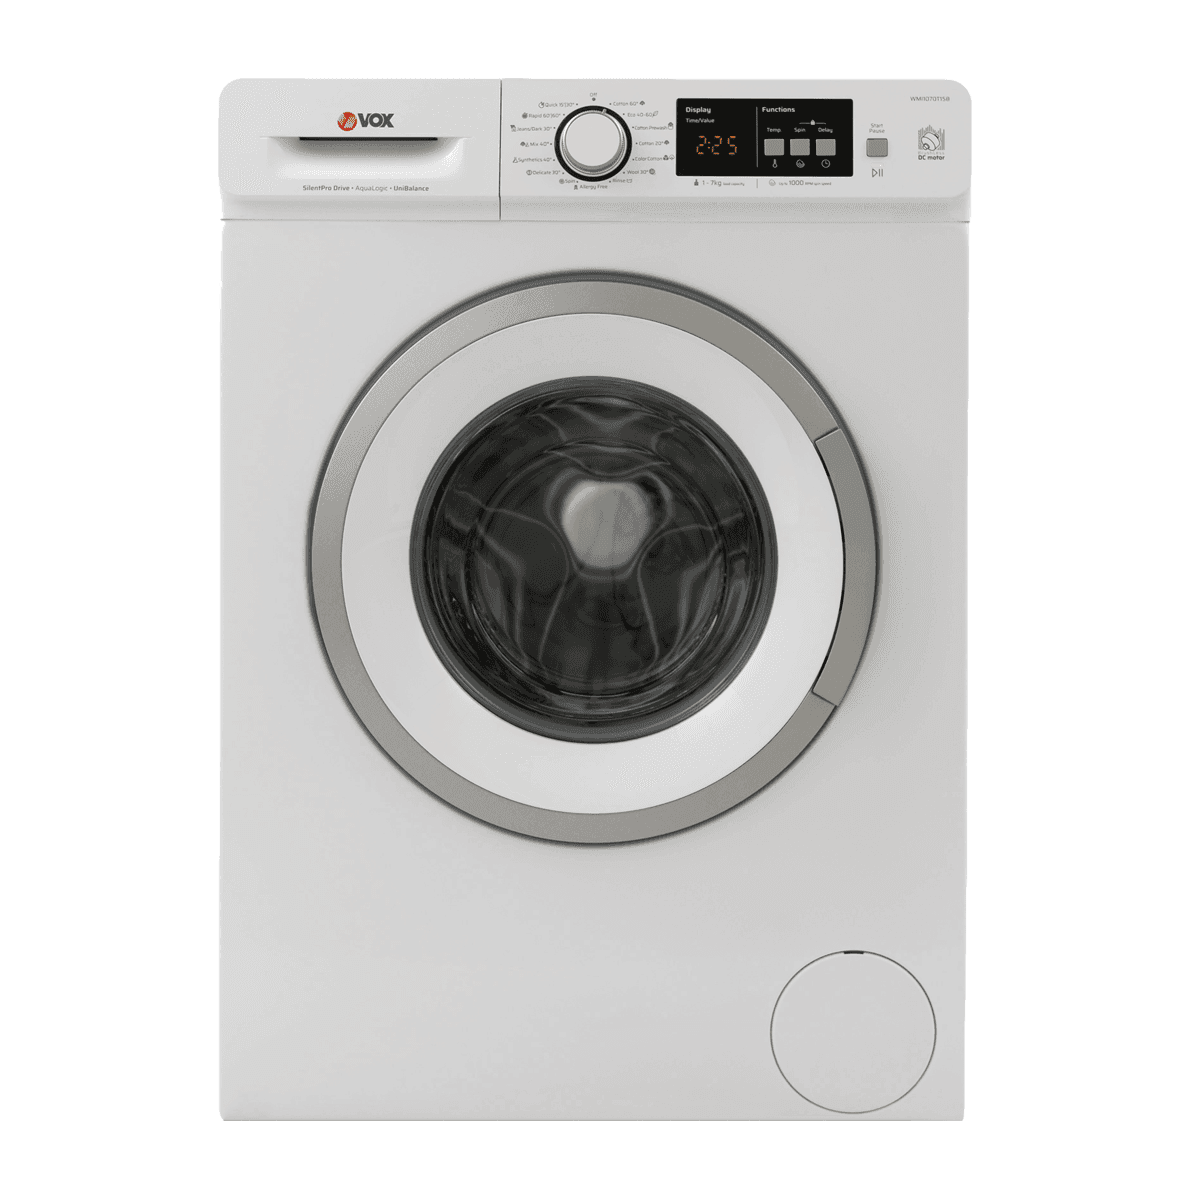 Selected image for VOX WMI 1070 T15B Mašina za pranje veša, 7kg, 15 prorama, 45l, 1000rpm, Bela